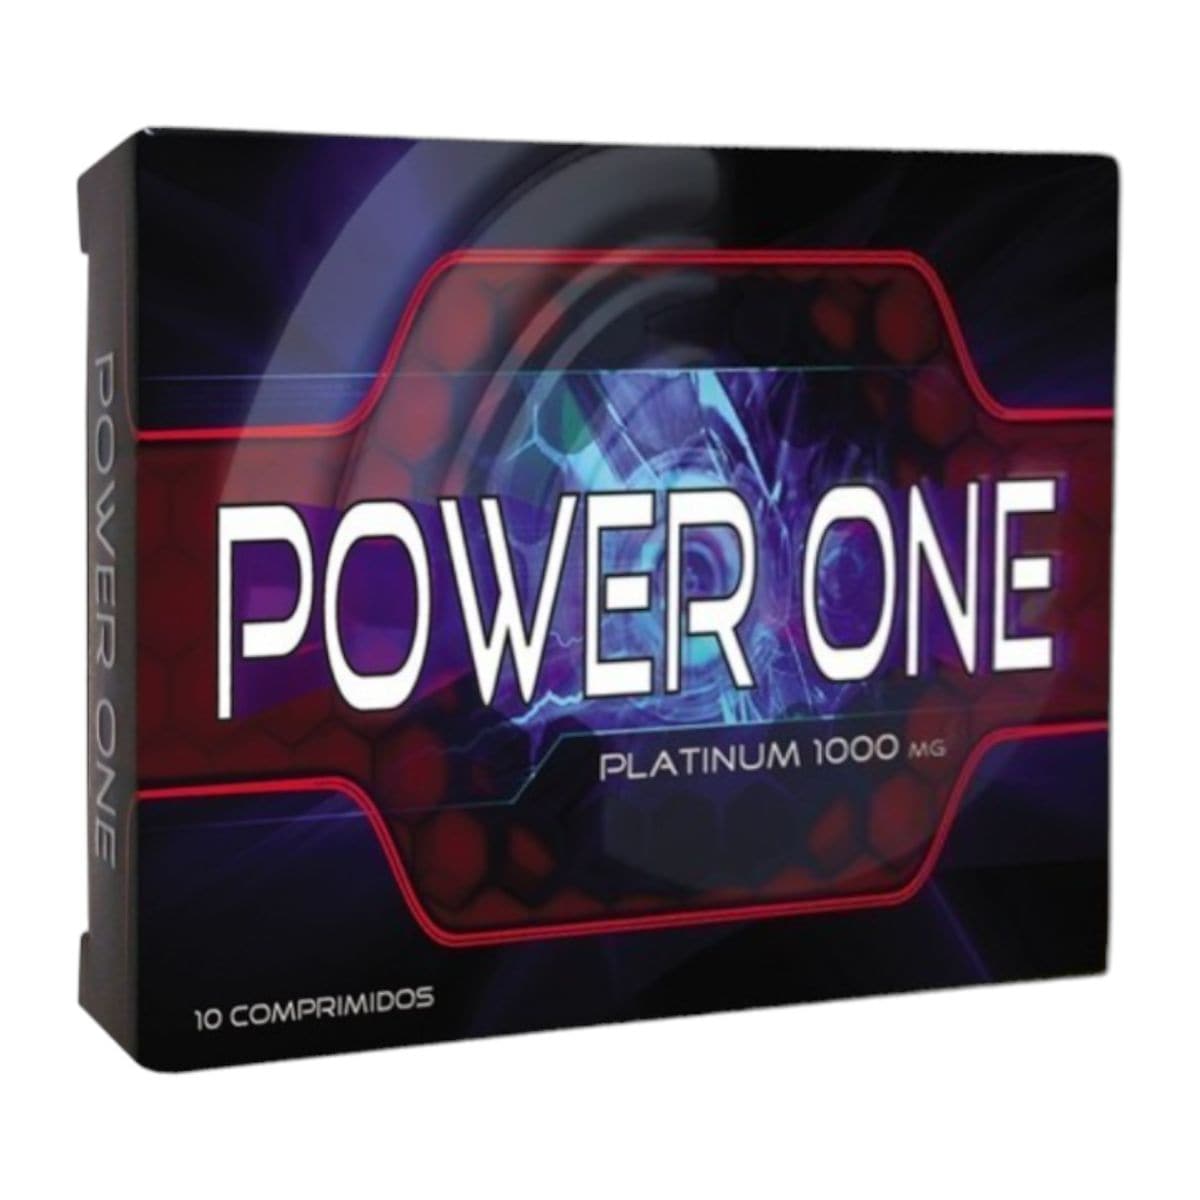 + Desempenho, Power One Platinum - Melhora Desempenho e Resistência Sexual  Power One   